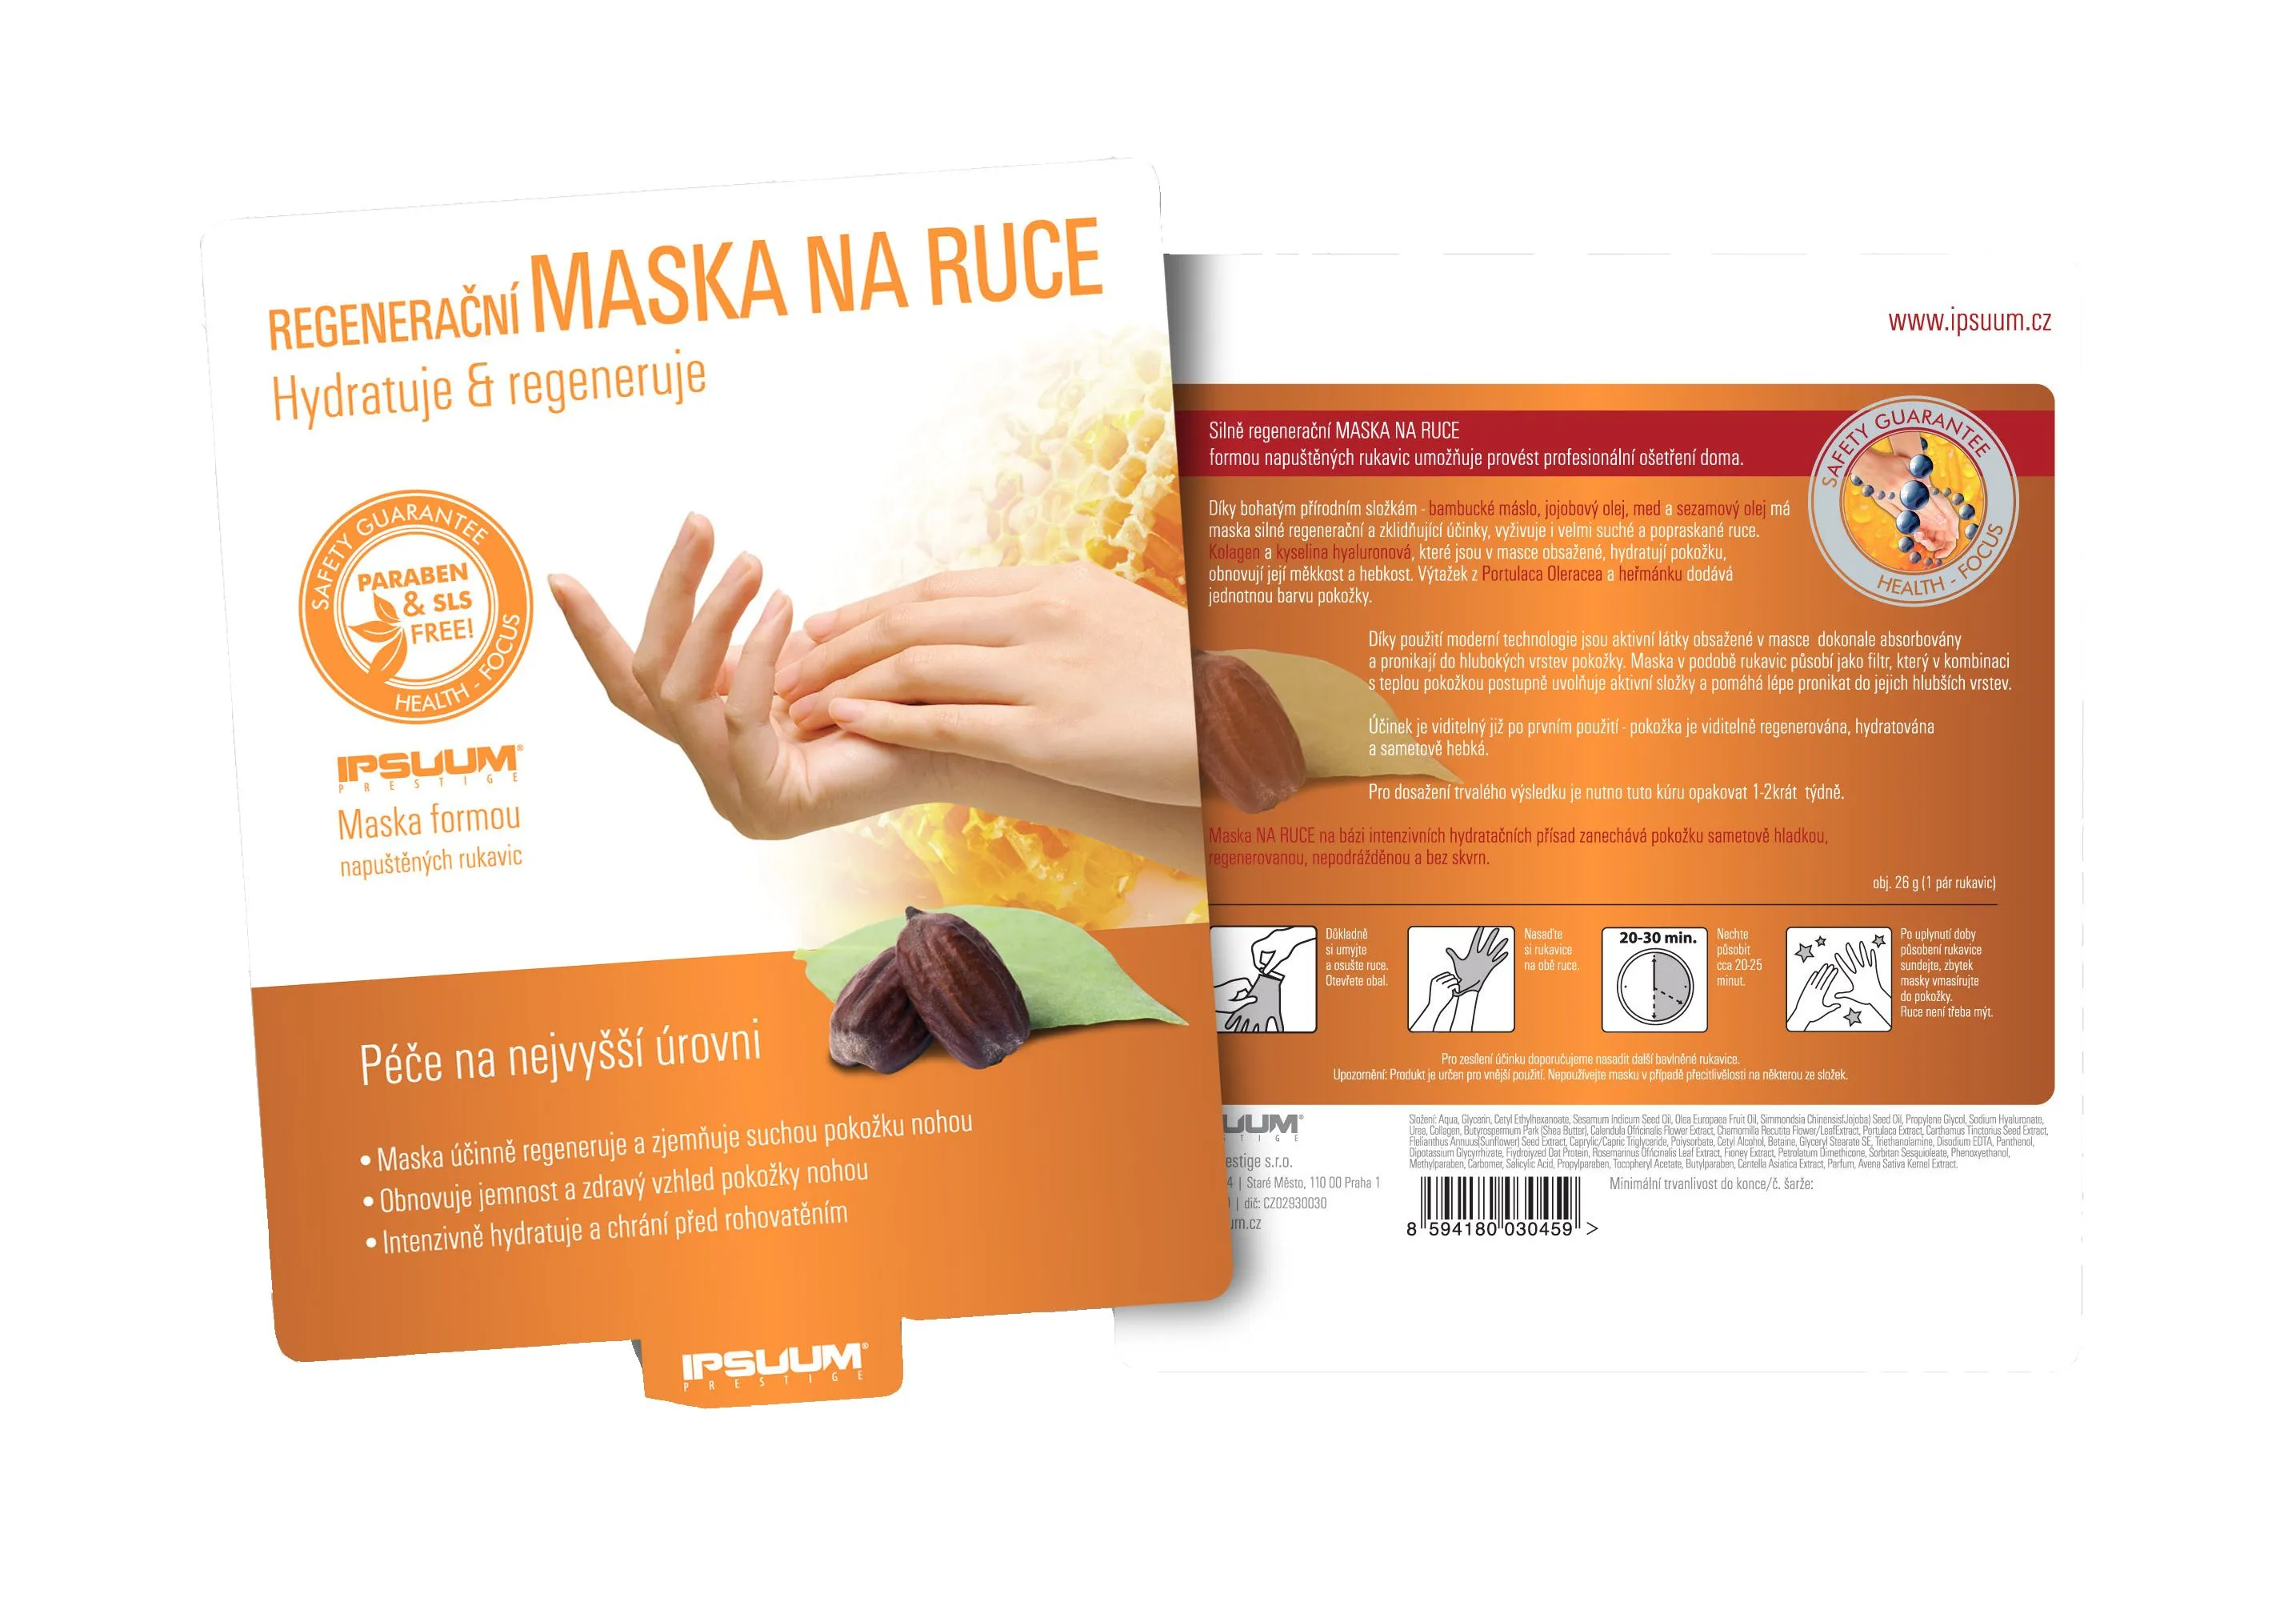 Ipsum prestige Maska Regenerační na ruce (1 pár) 26 g